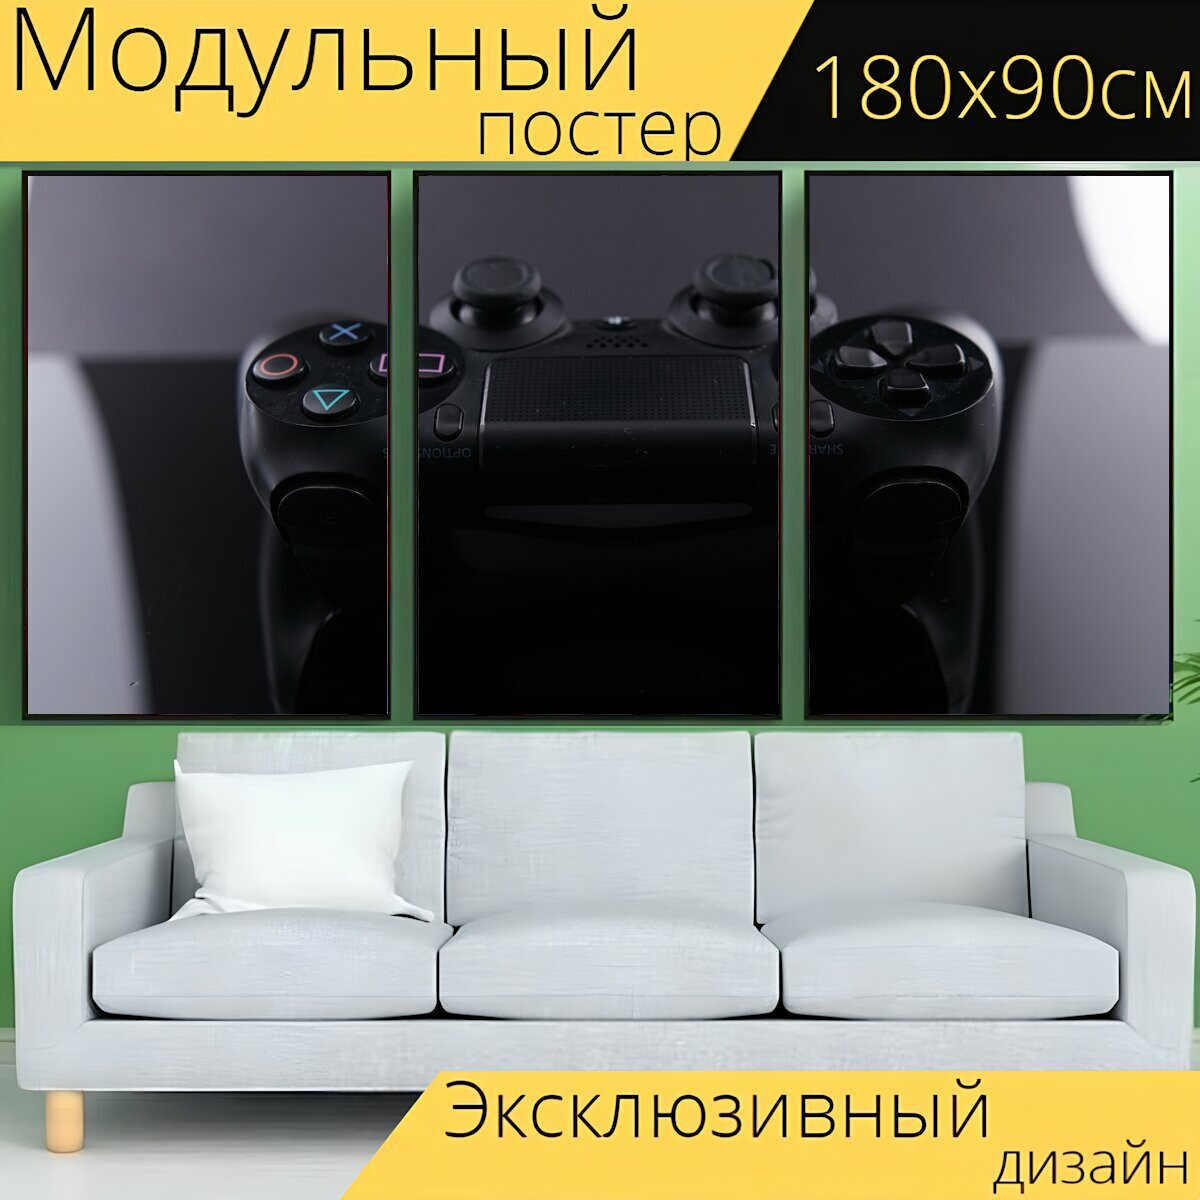 Модульный постер "Игра, контролер, игровая приставка" 180 x 90 см. для интерьера